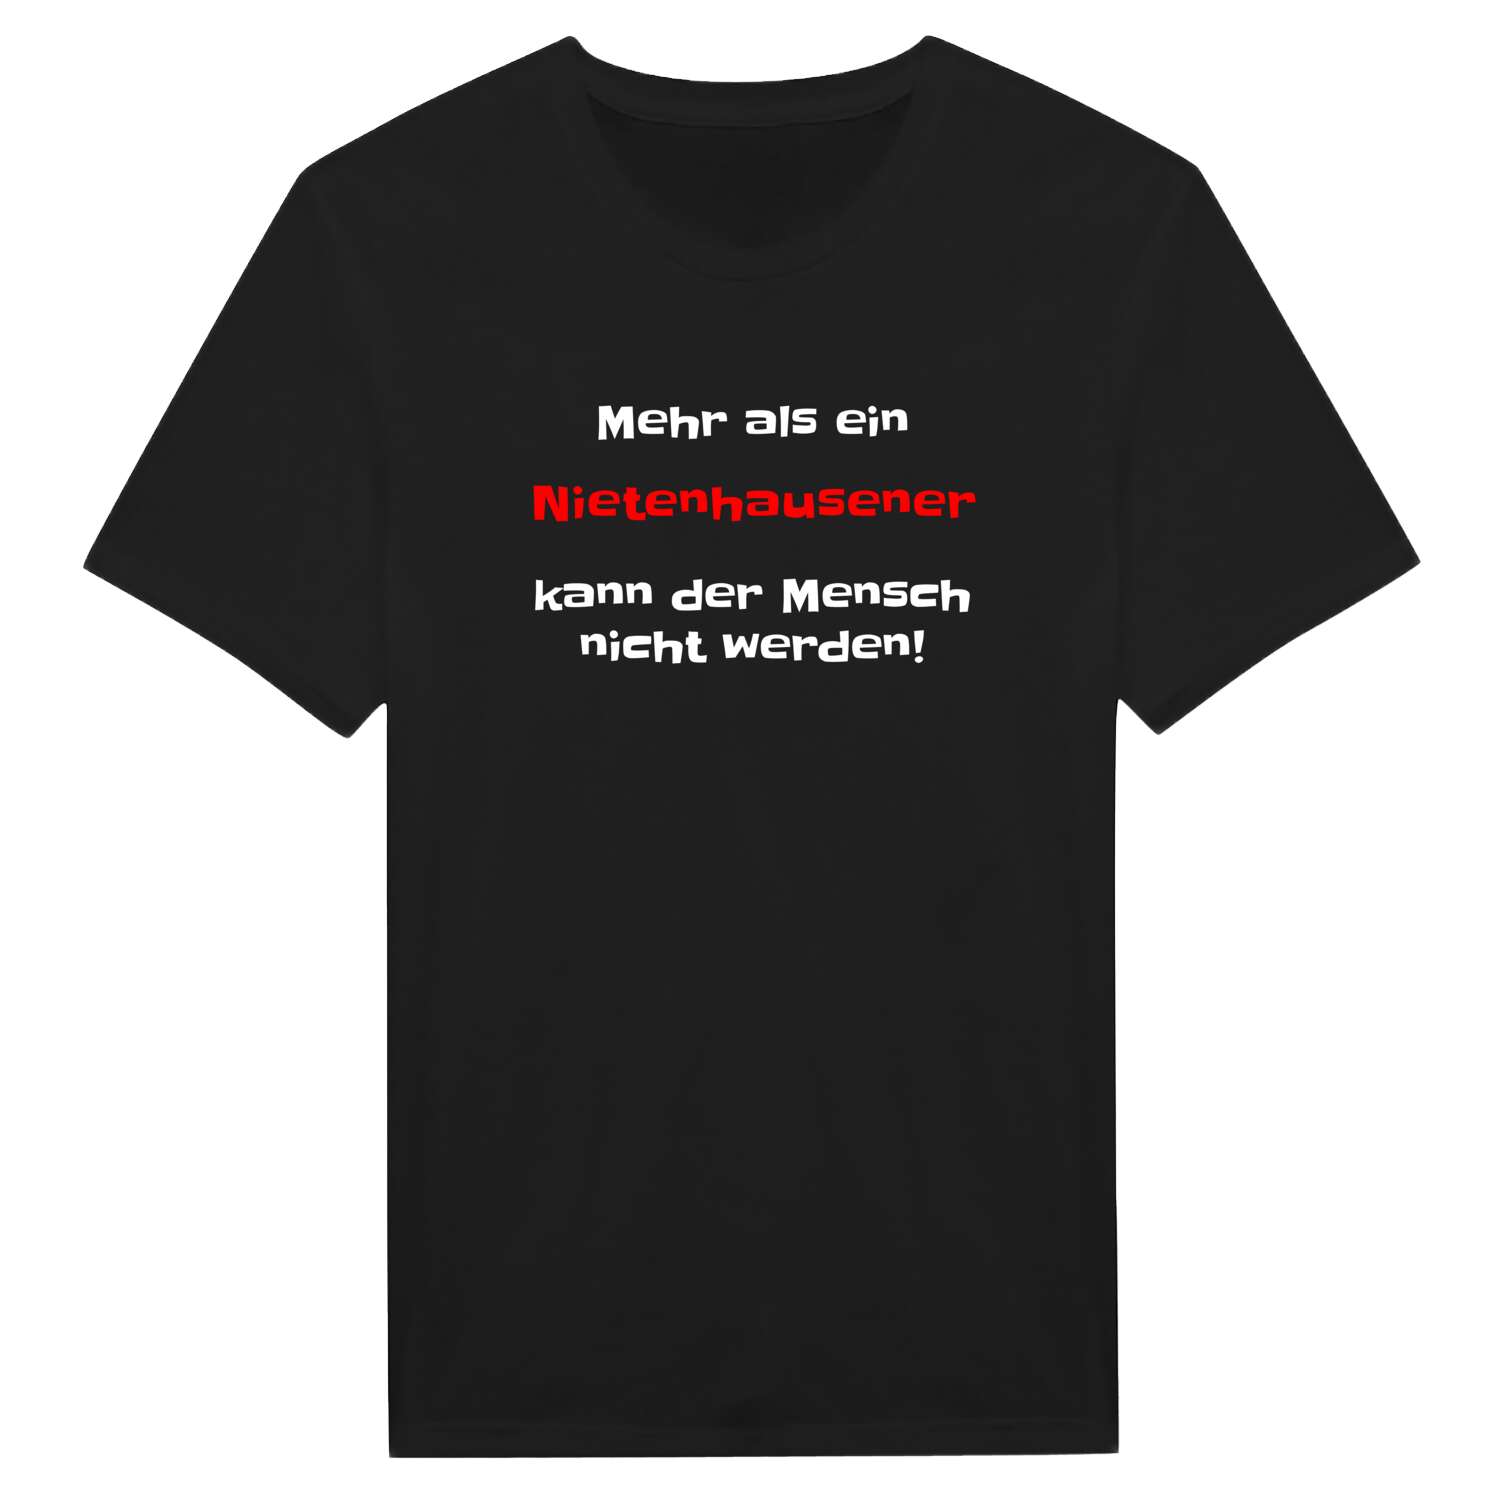 Nietenhausen T-Shirt »Mehr als ein«